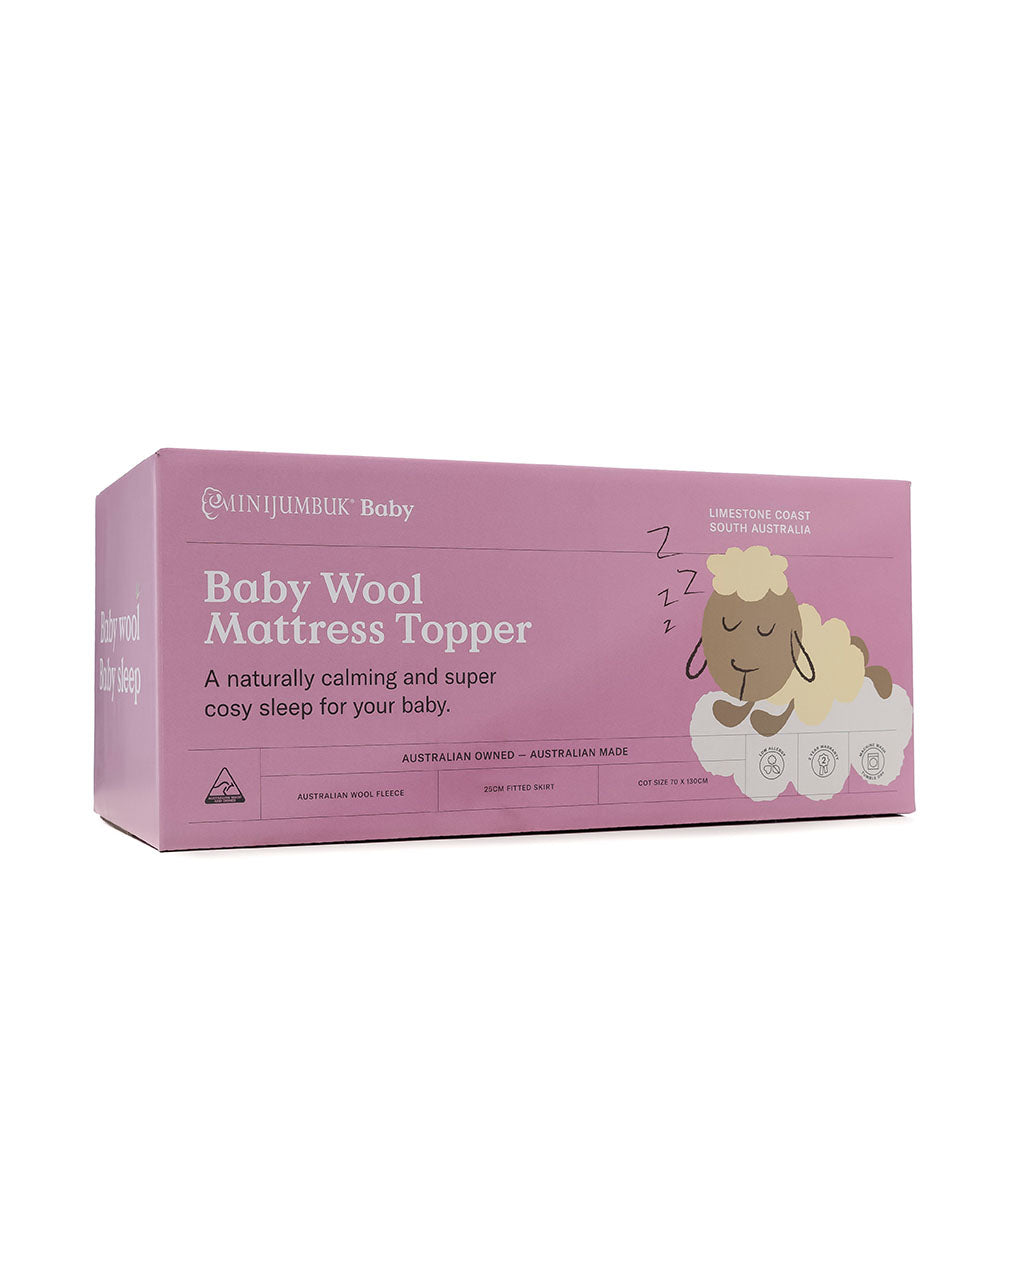 Baby Wool Mattress Topper